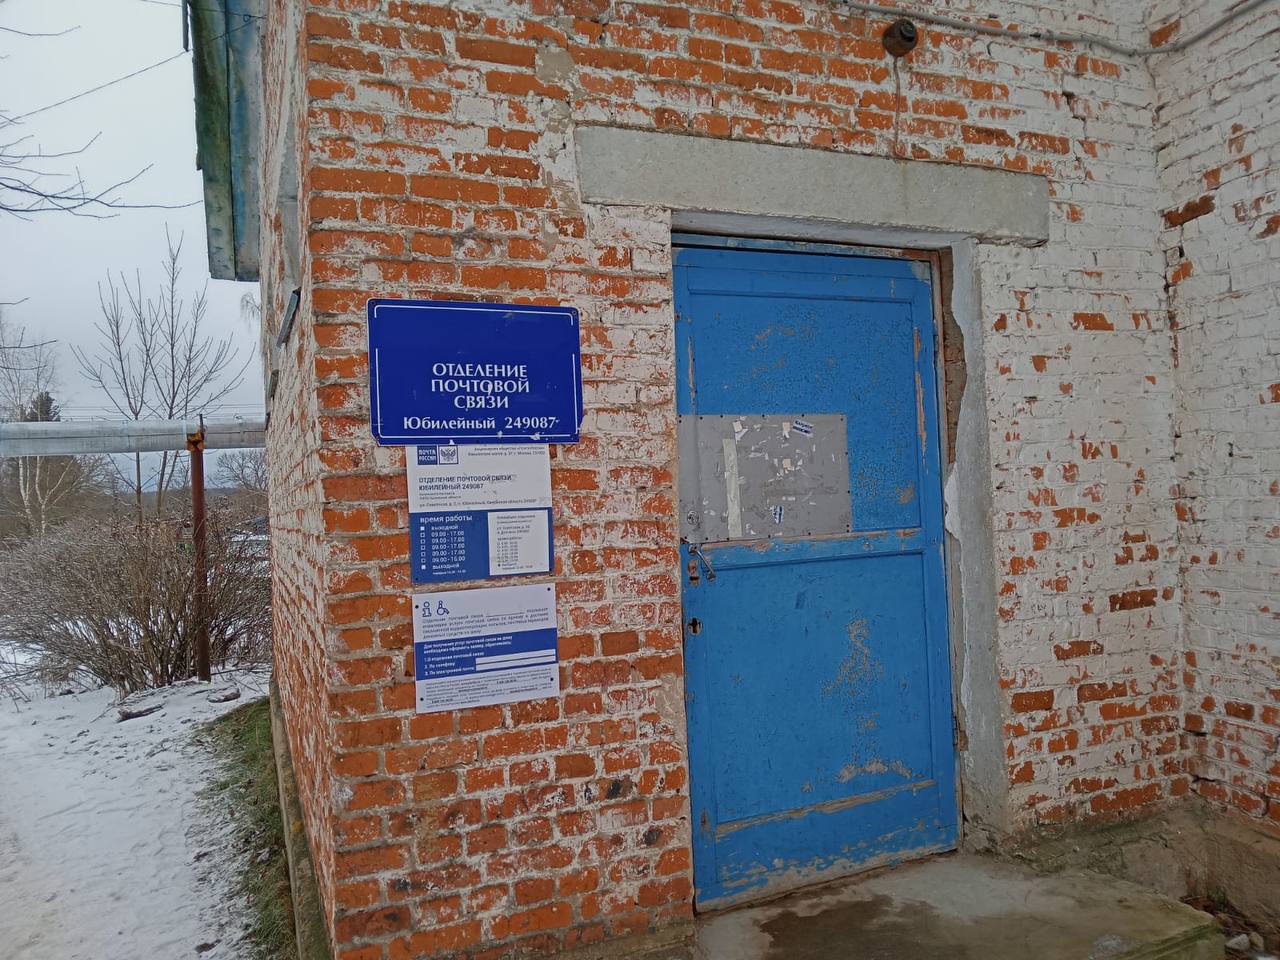 Отделение, в котором были заперты сотрудники почты. Фото © Telegram / Прокуратура Калужской области